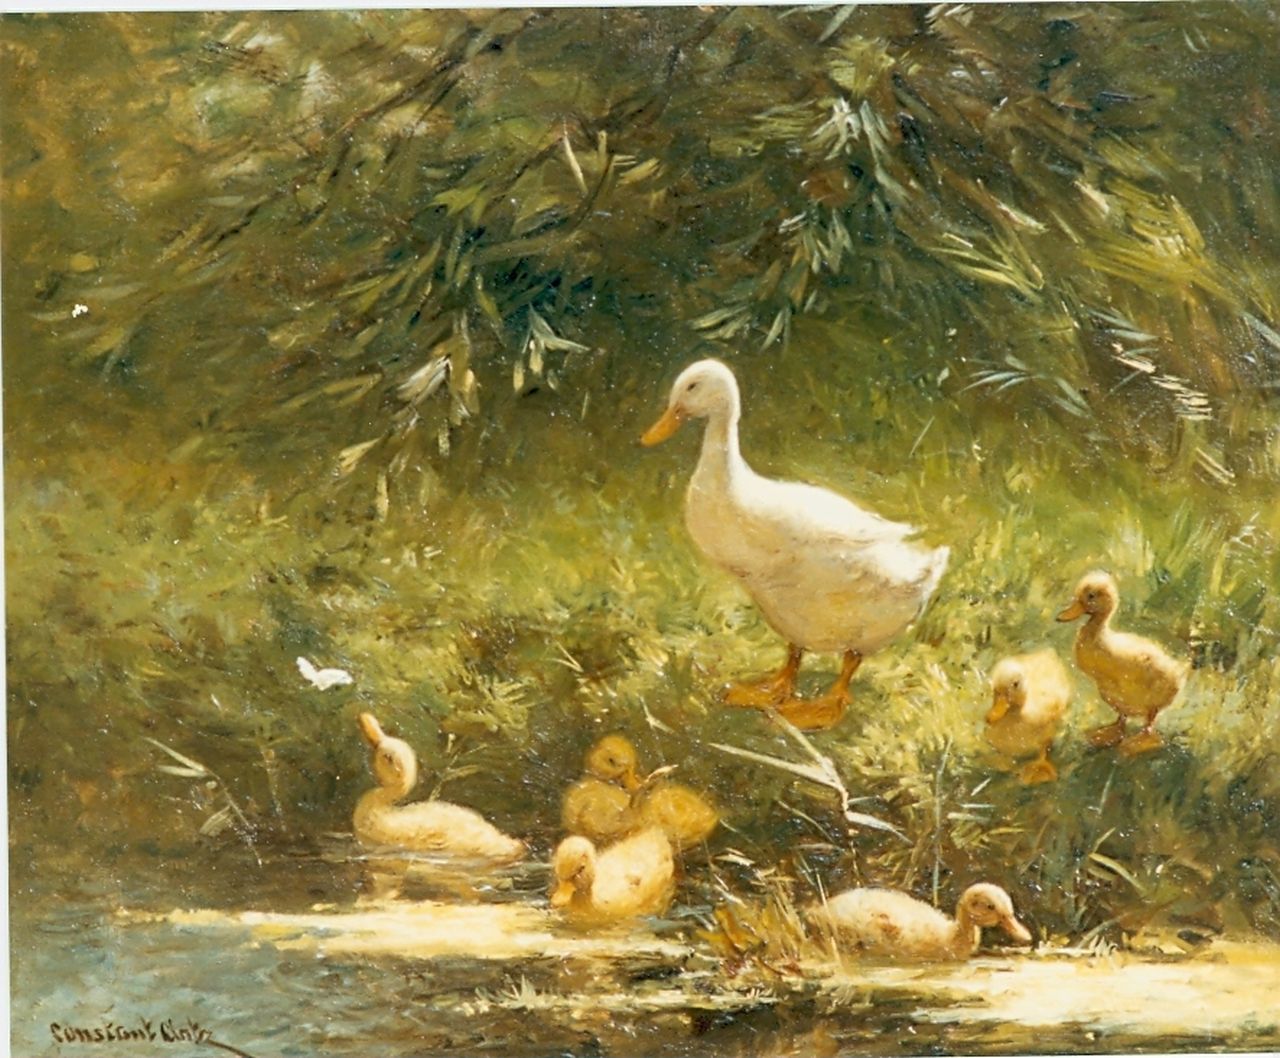 Artz C.D.L.  | 'Constant' David Ludovic Artz, Duck with ducklings, oil on panel 40.0 x 50.0 cm, signed l.l.